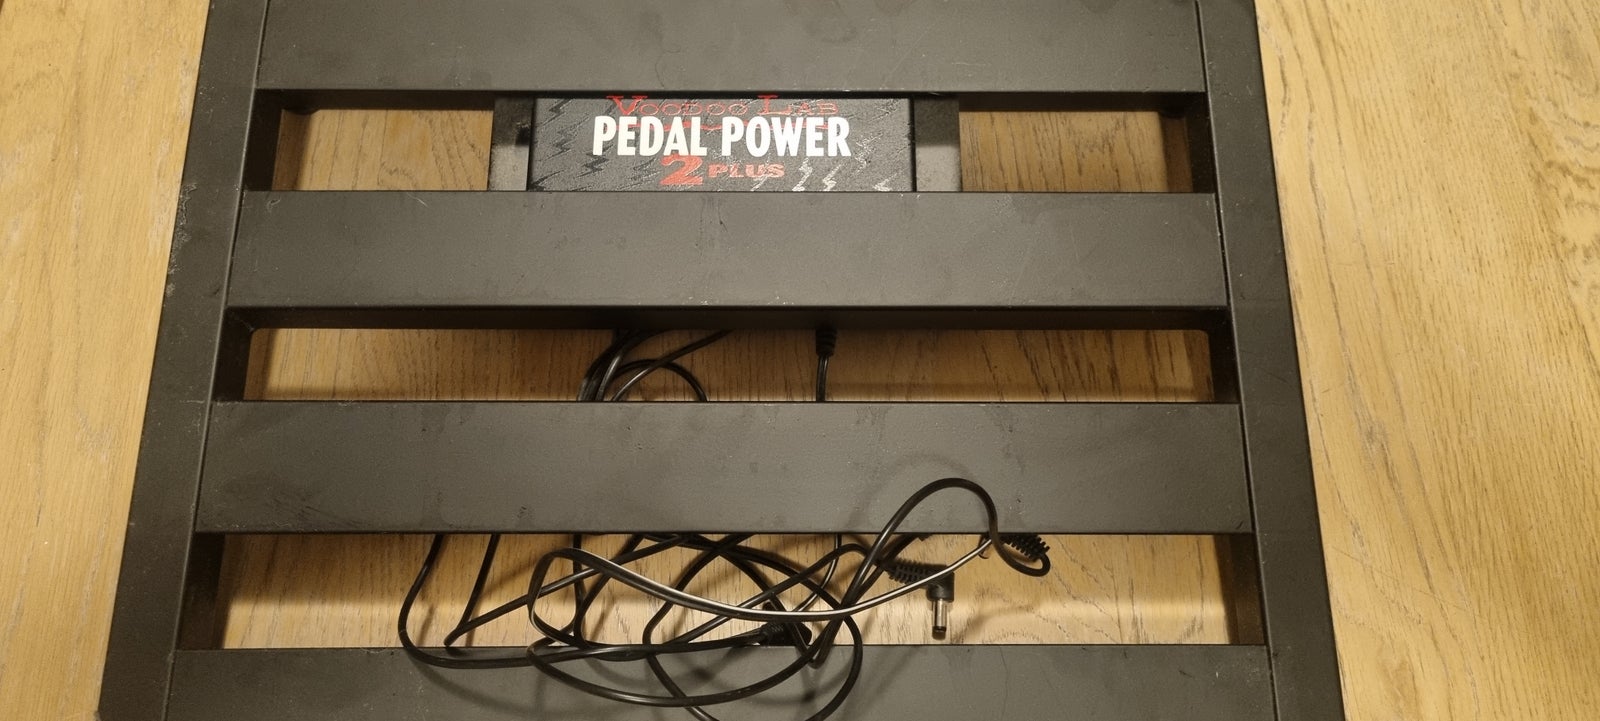 Pedaltrain Jr inklusiv voodoo lab pedal power 2 p